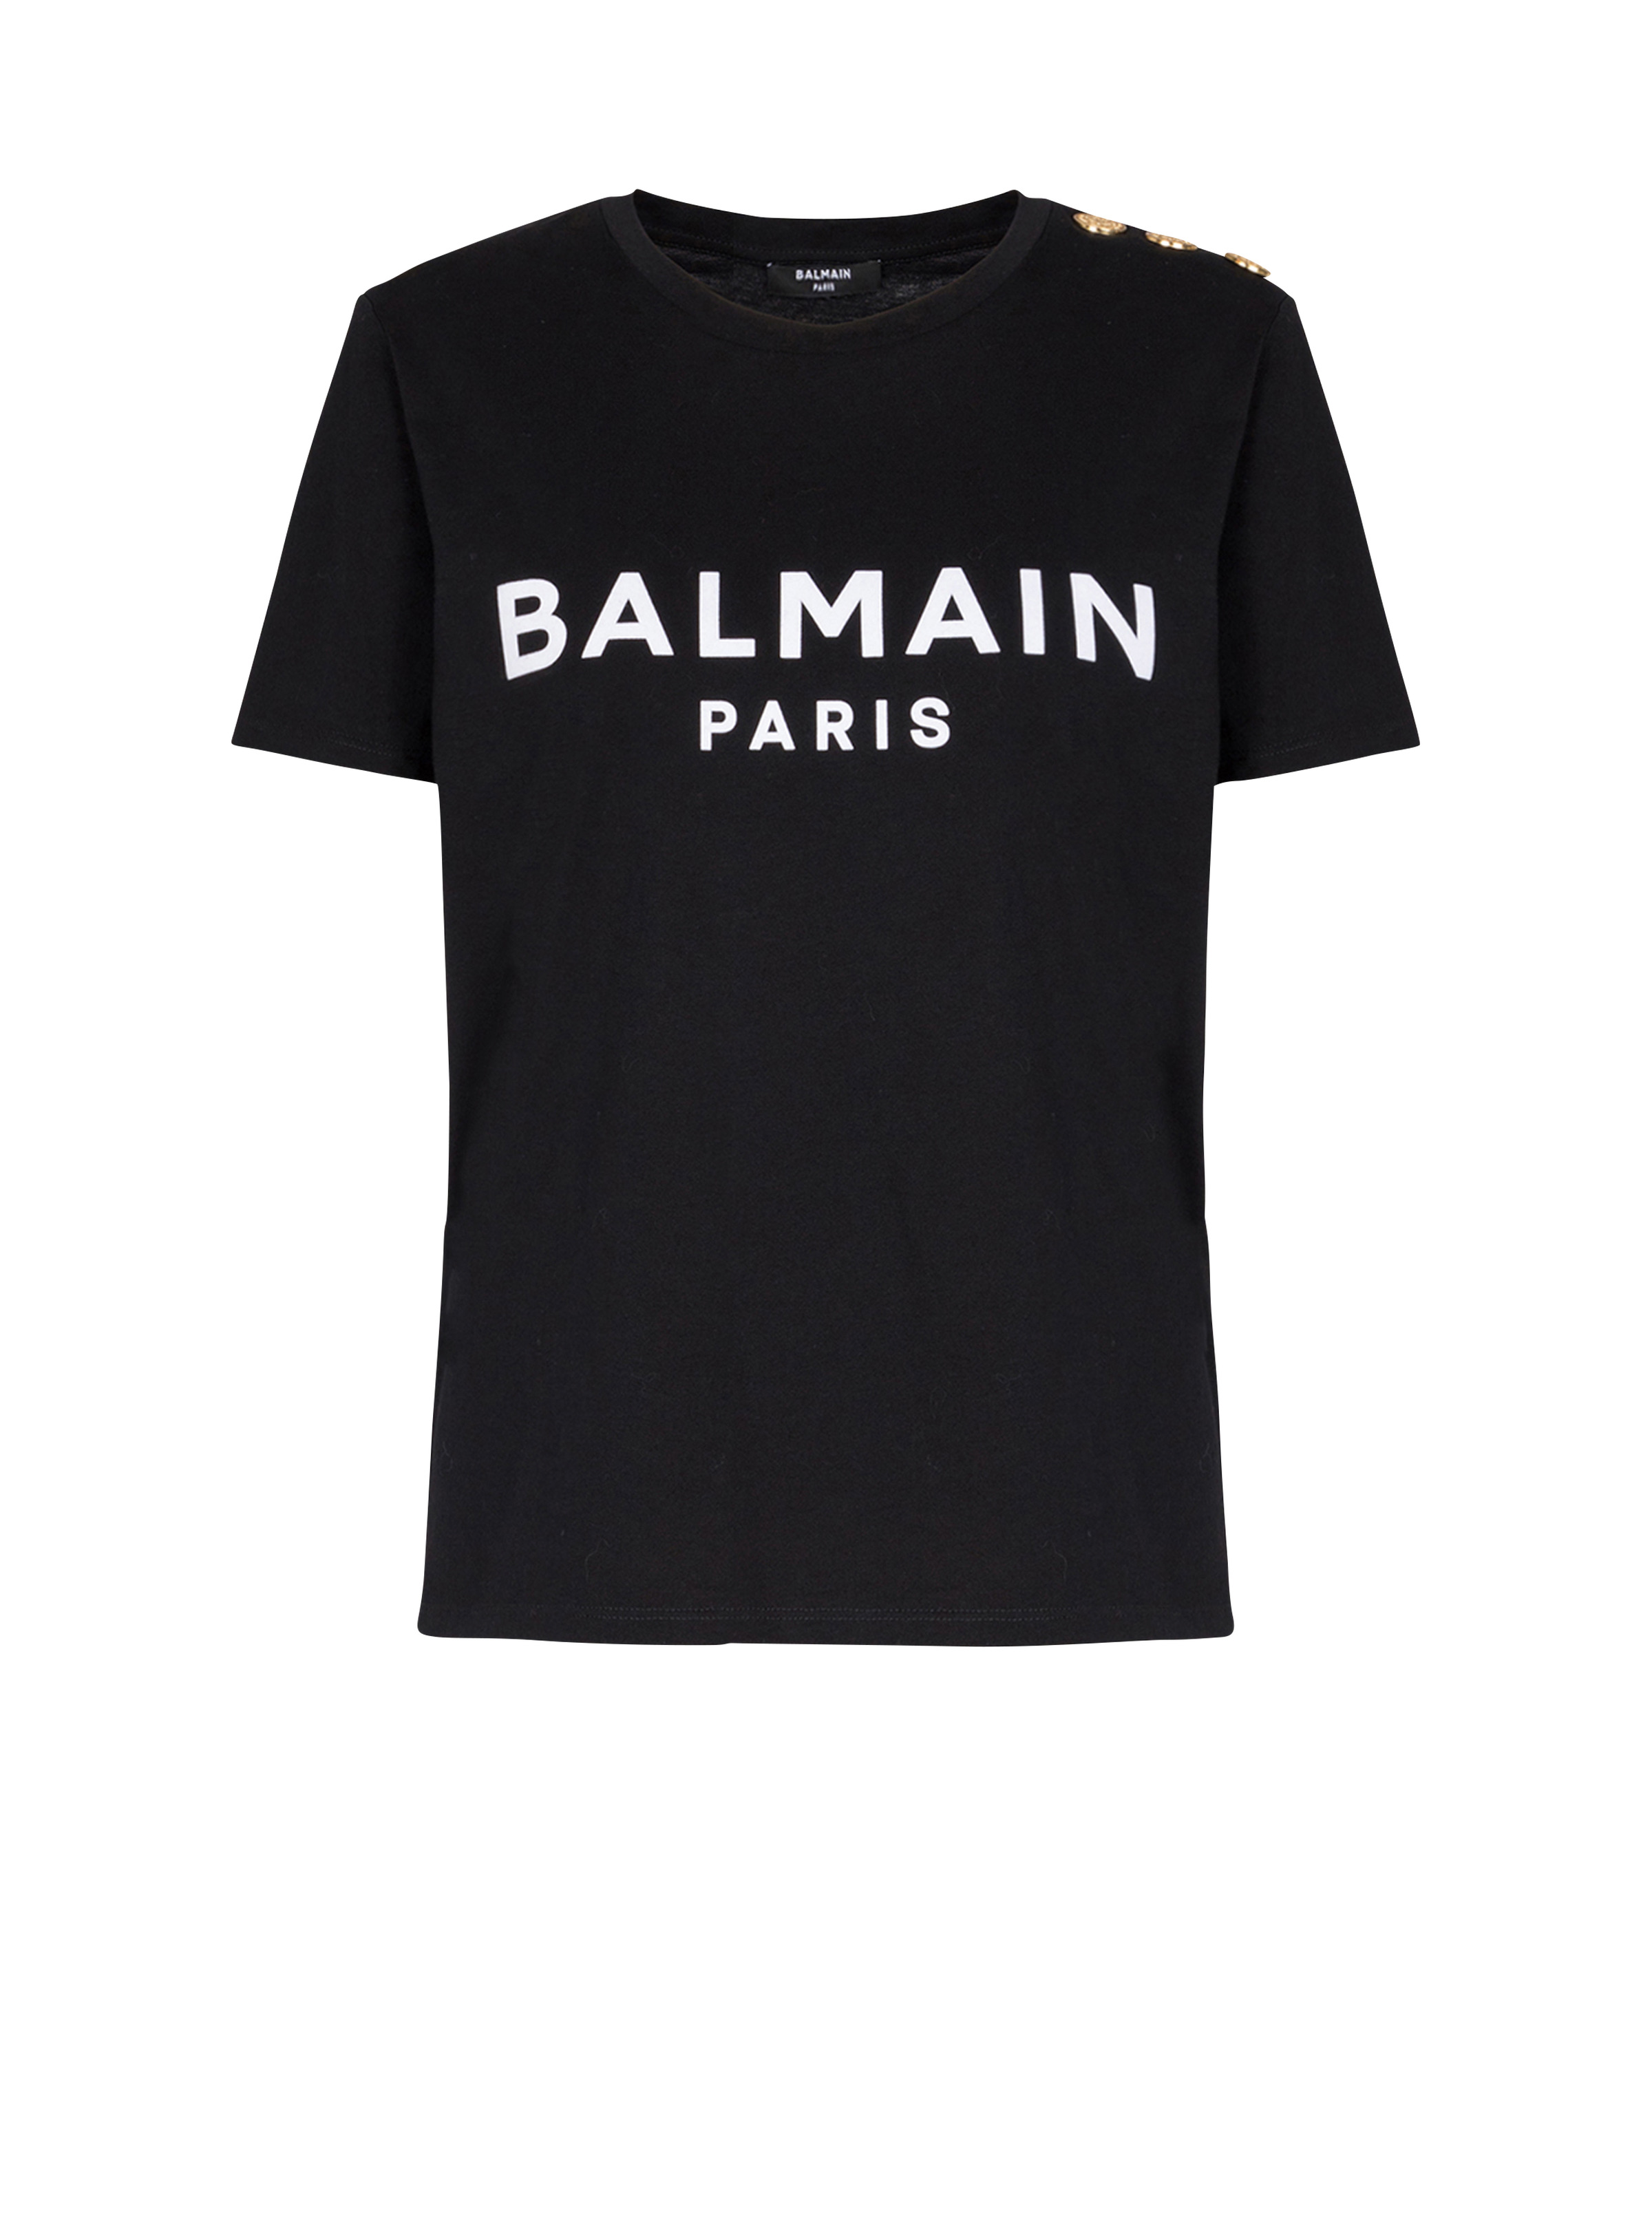 T-shirt with Balmain Paris print - 1